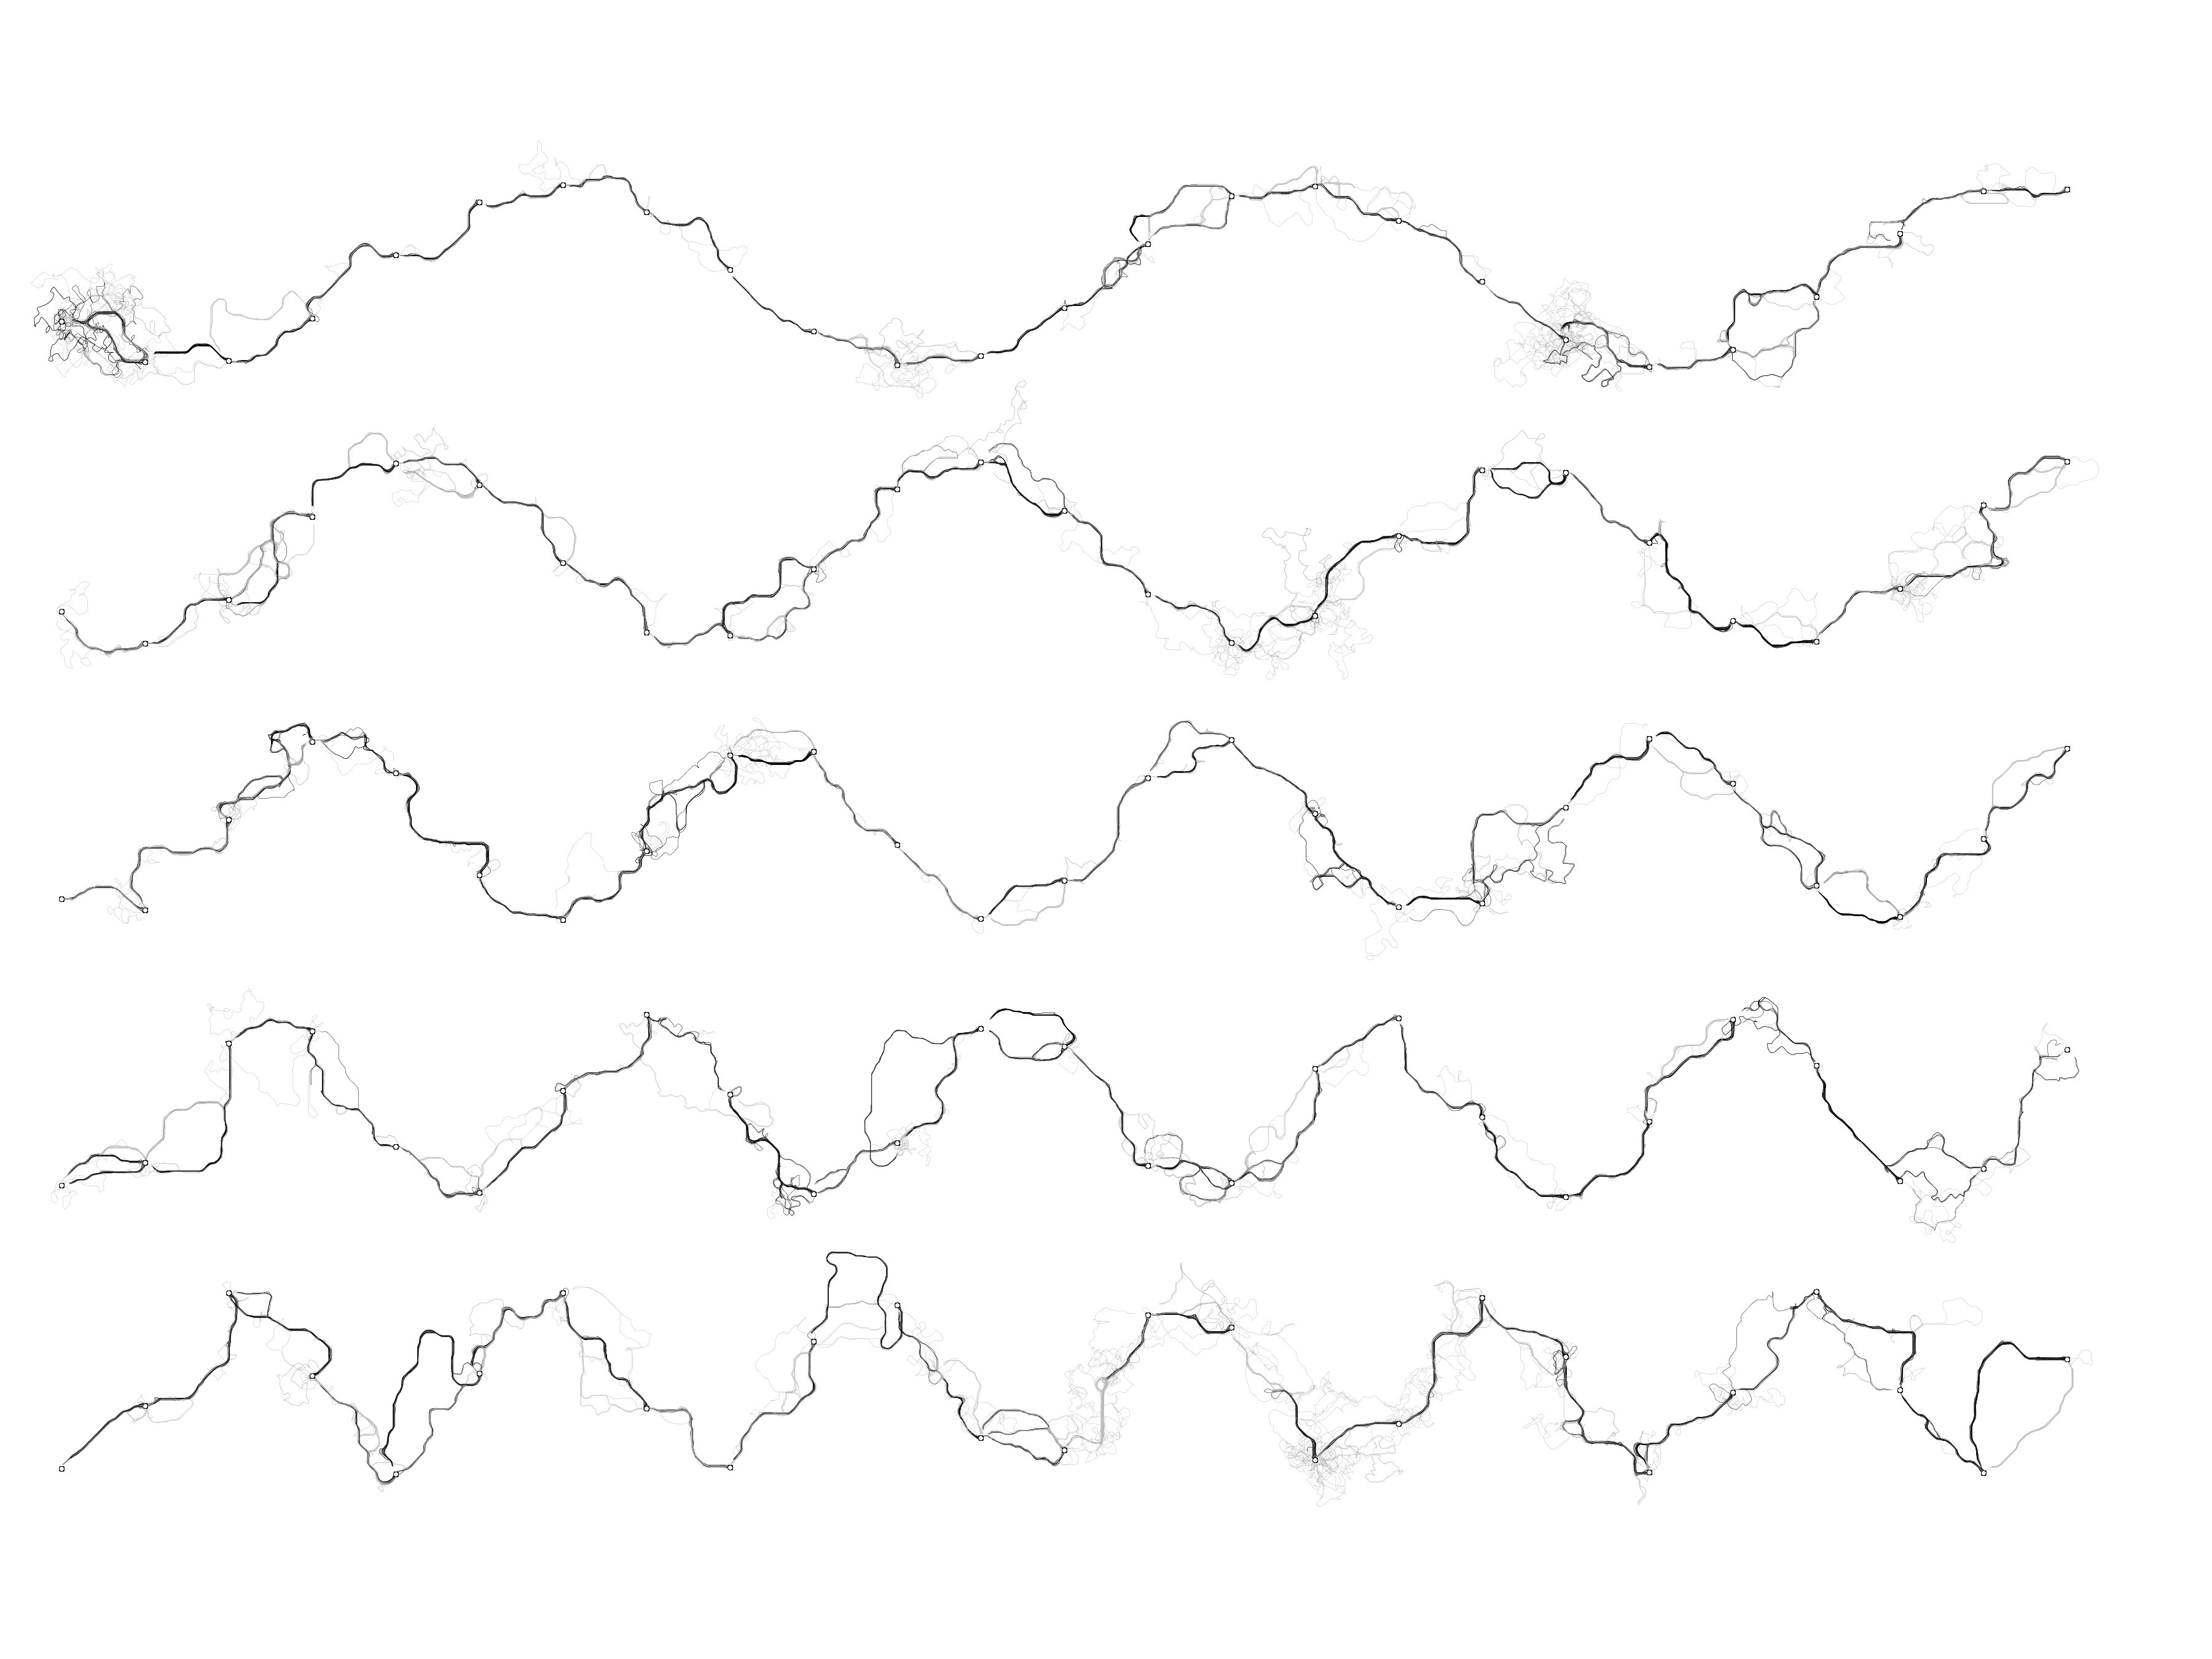 Рисуем муравьями: процедурные изображения при помощи алгоритмов оптимизации муравьиной колонии - 10